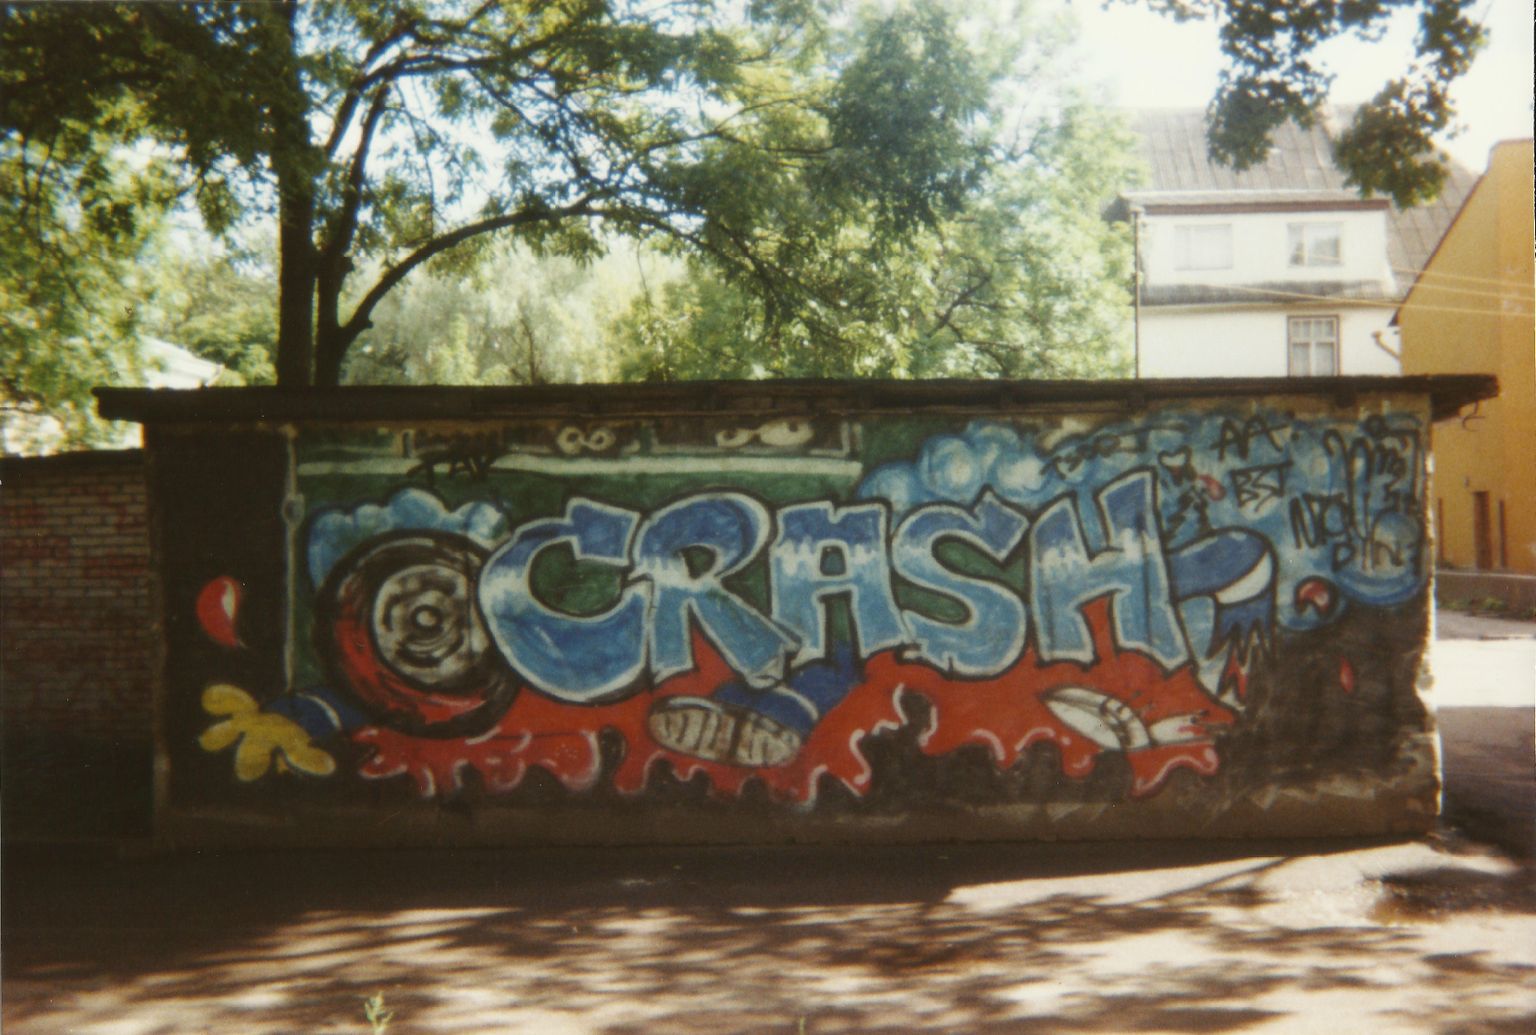 Eesti grafiti varase ajaloo üks legendaarsemaid taieseid “Crash”.